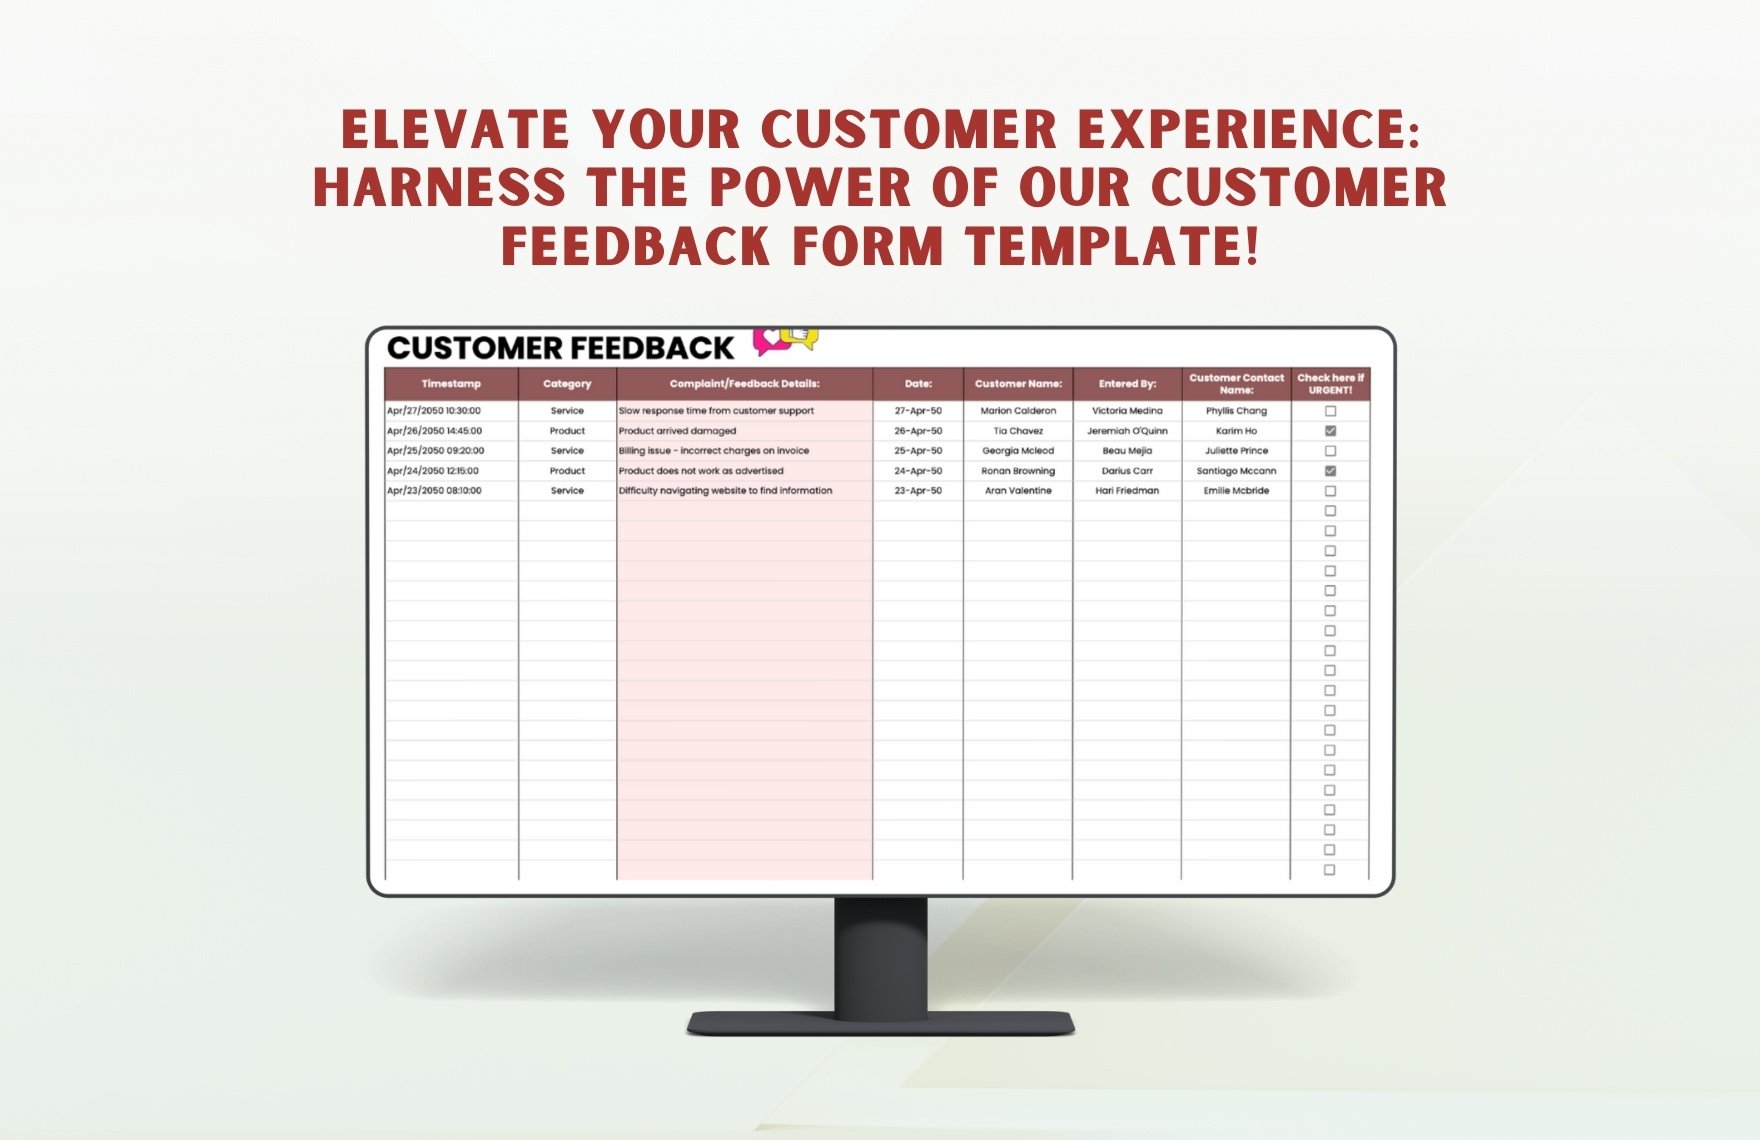 Customer Feedback Form Template